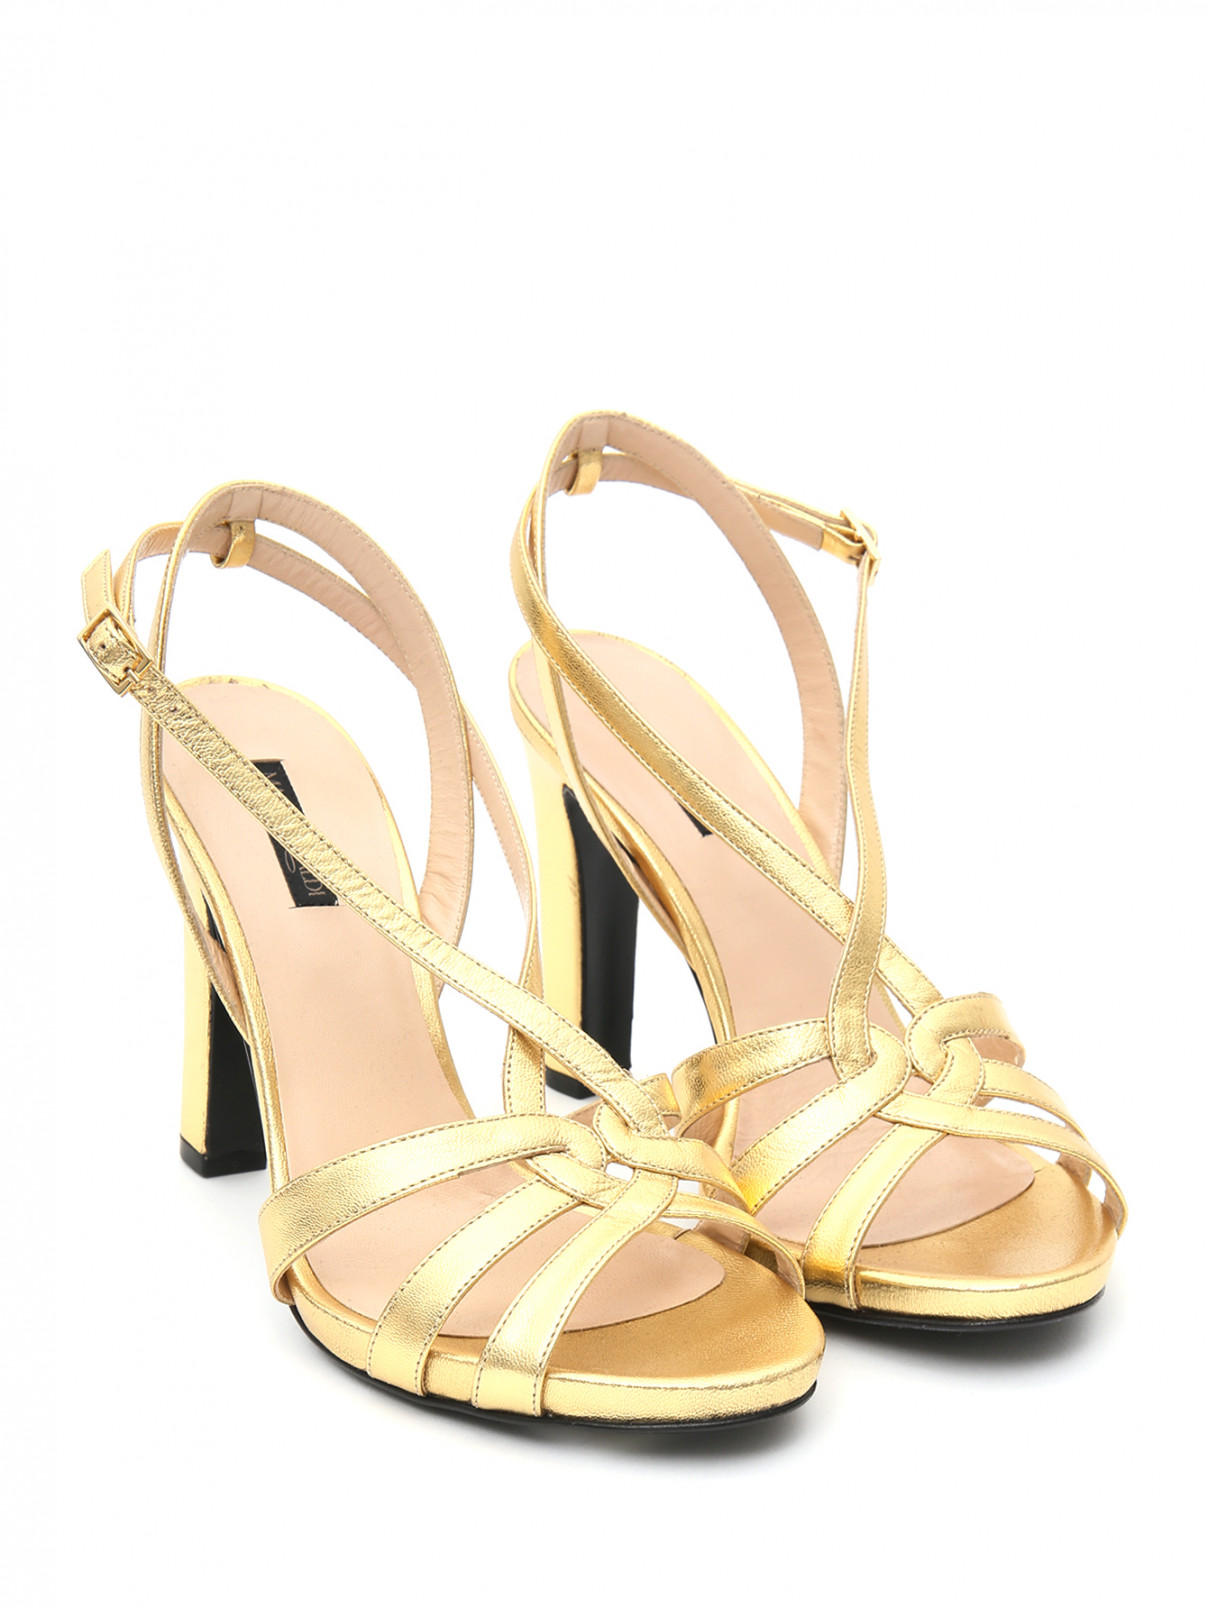 Босоножки металлик на высоком каблуке Marina Rinaldi  –  Общий вид  – Цвет:  Золотой